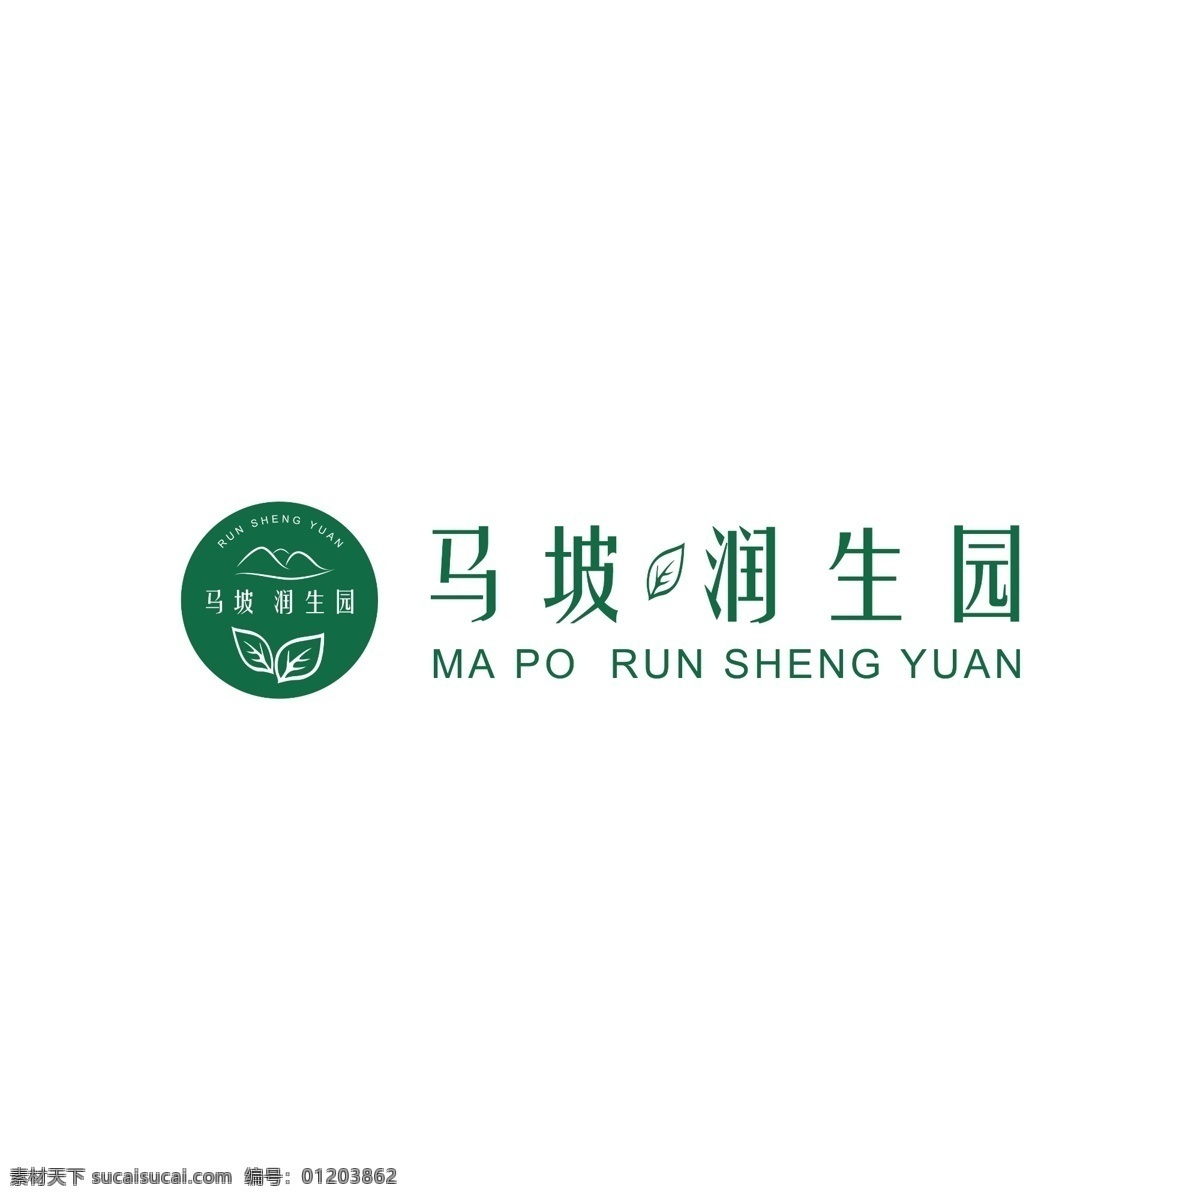 润生 园 茶园 logo 茶叶 绿 茶叶logo 绿色 标志 润生园